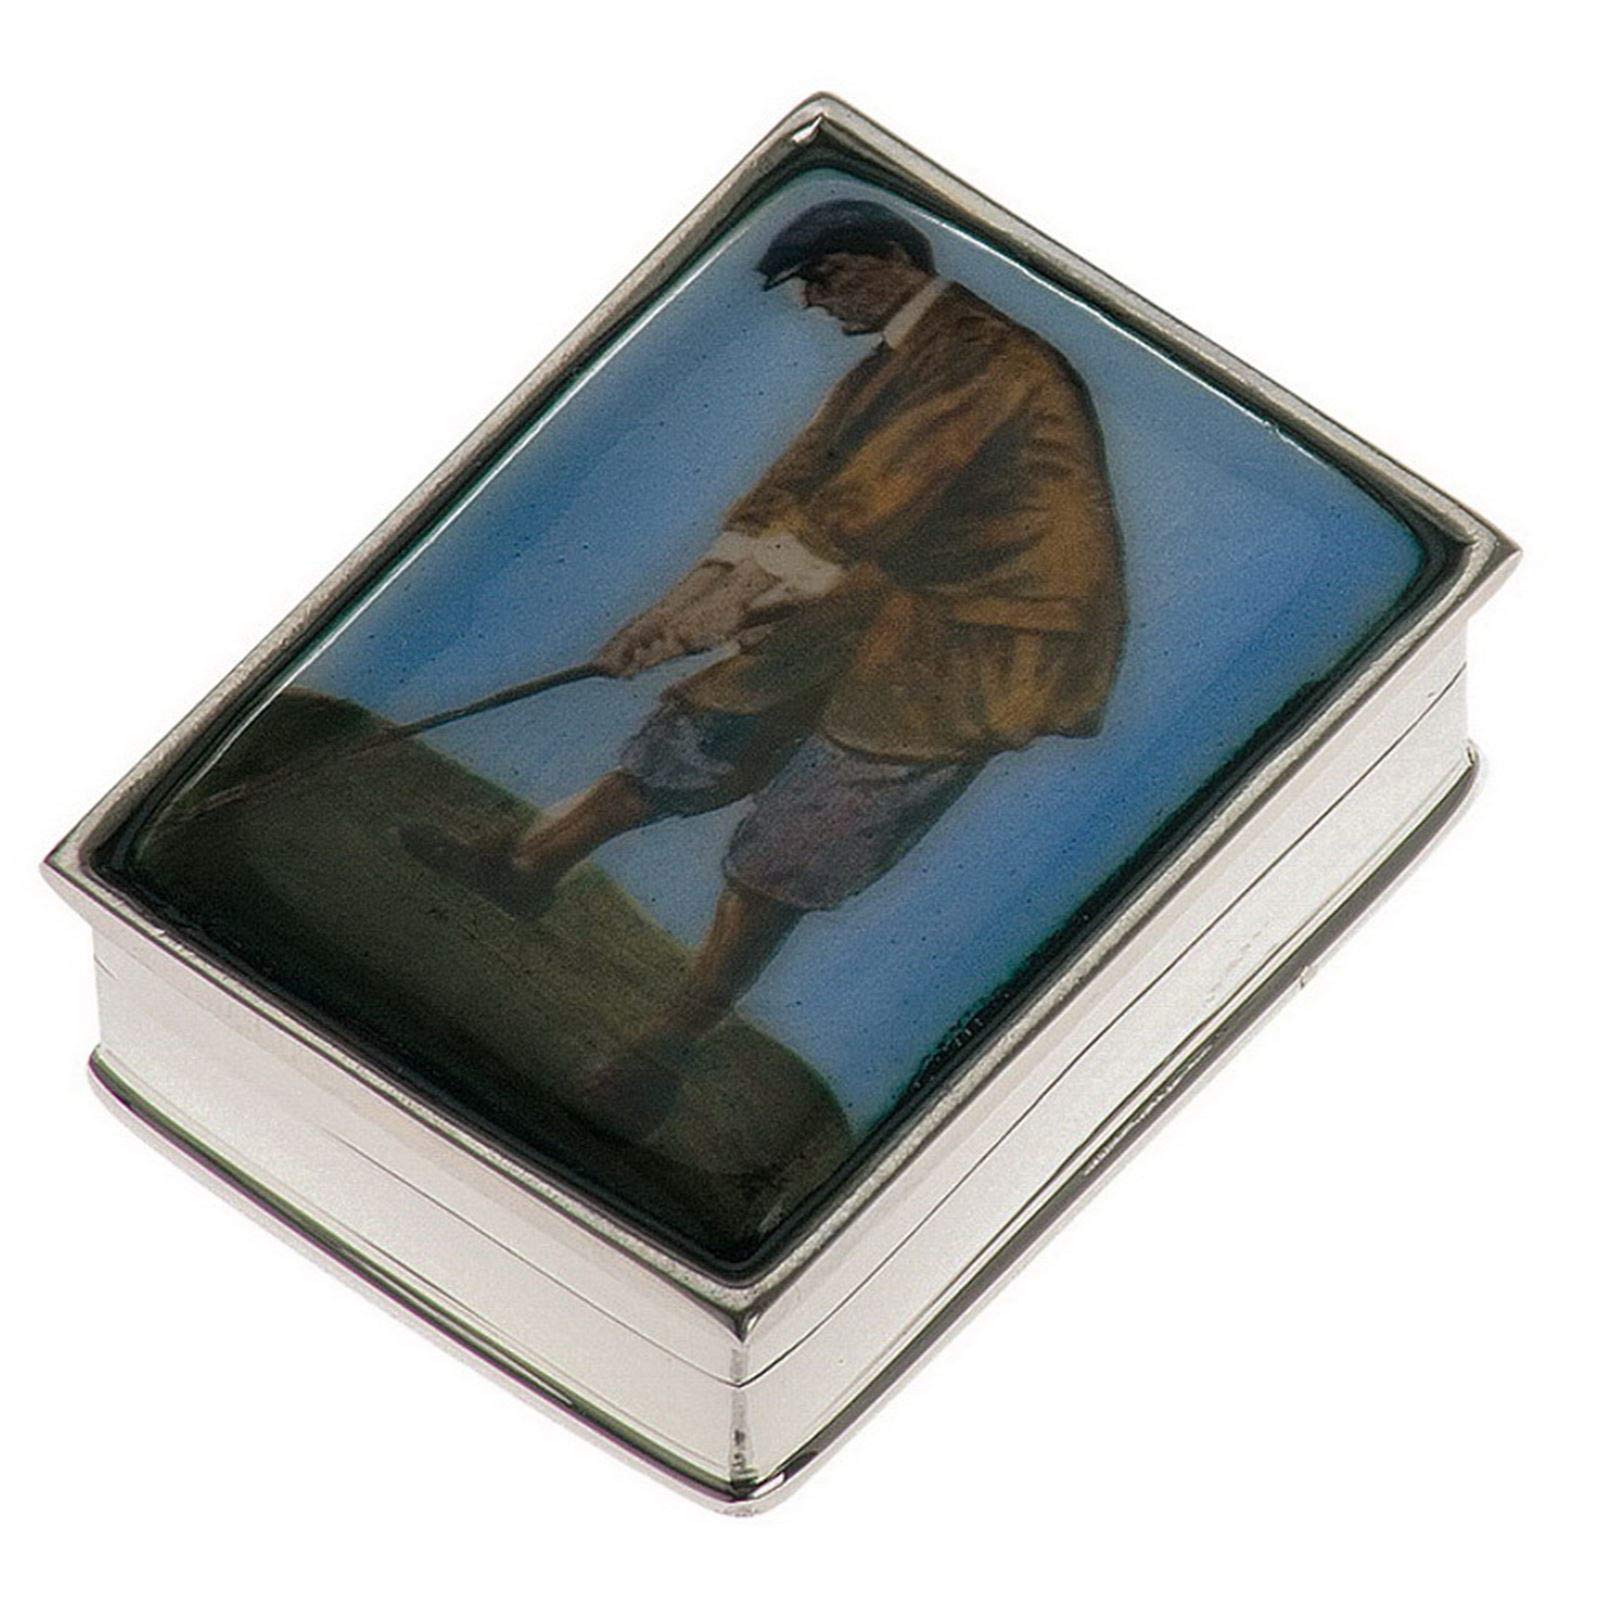 kleine rechteckige Pillendose 925 Sterling Silber - Deckel mit Golfer-Motiv - ca. 3.7 x 2.7 cm - ohne Einsatz 1 Fach